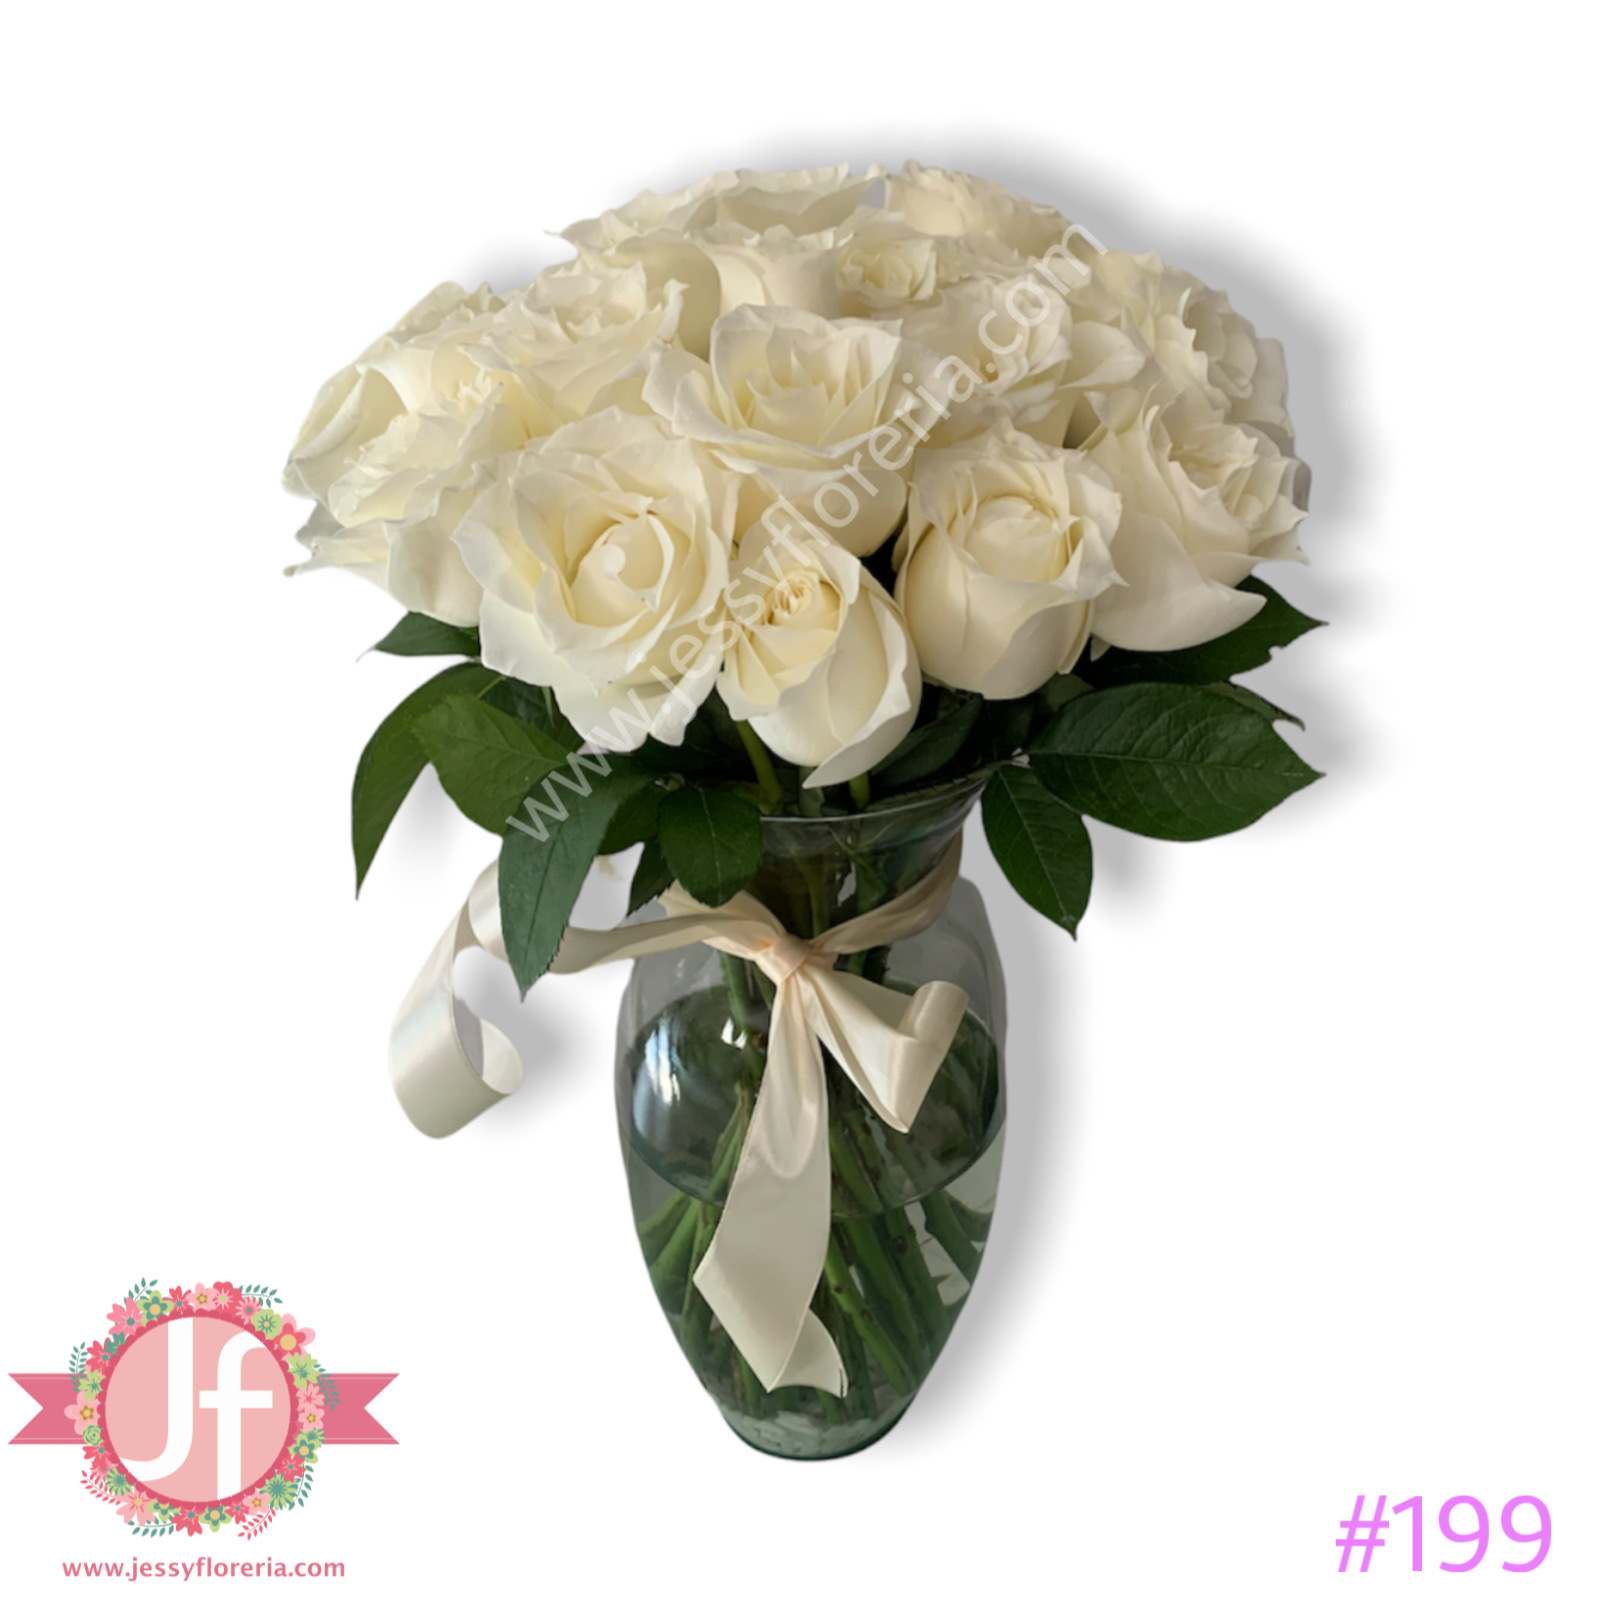 Florero con 24 rosas blancas - Envíos GRATIS Mismo día 2 a 4 Hrs